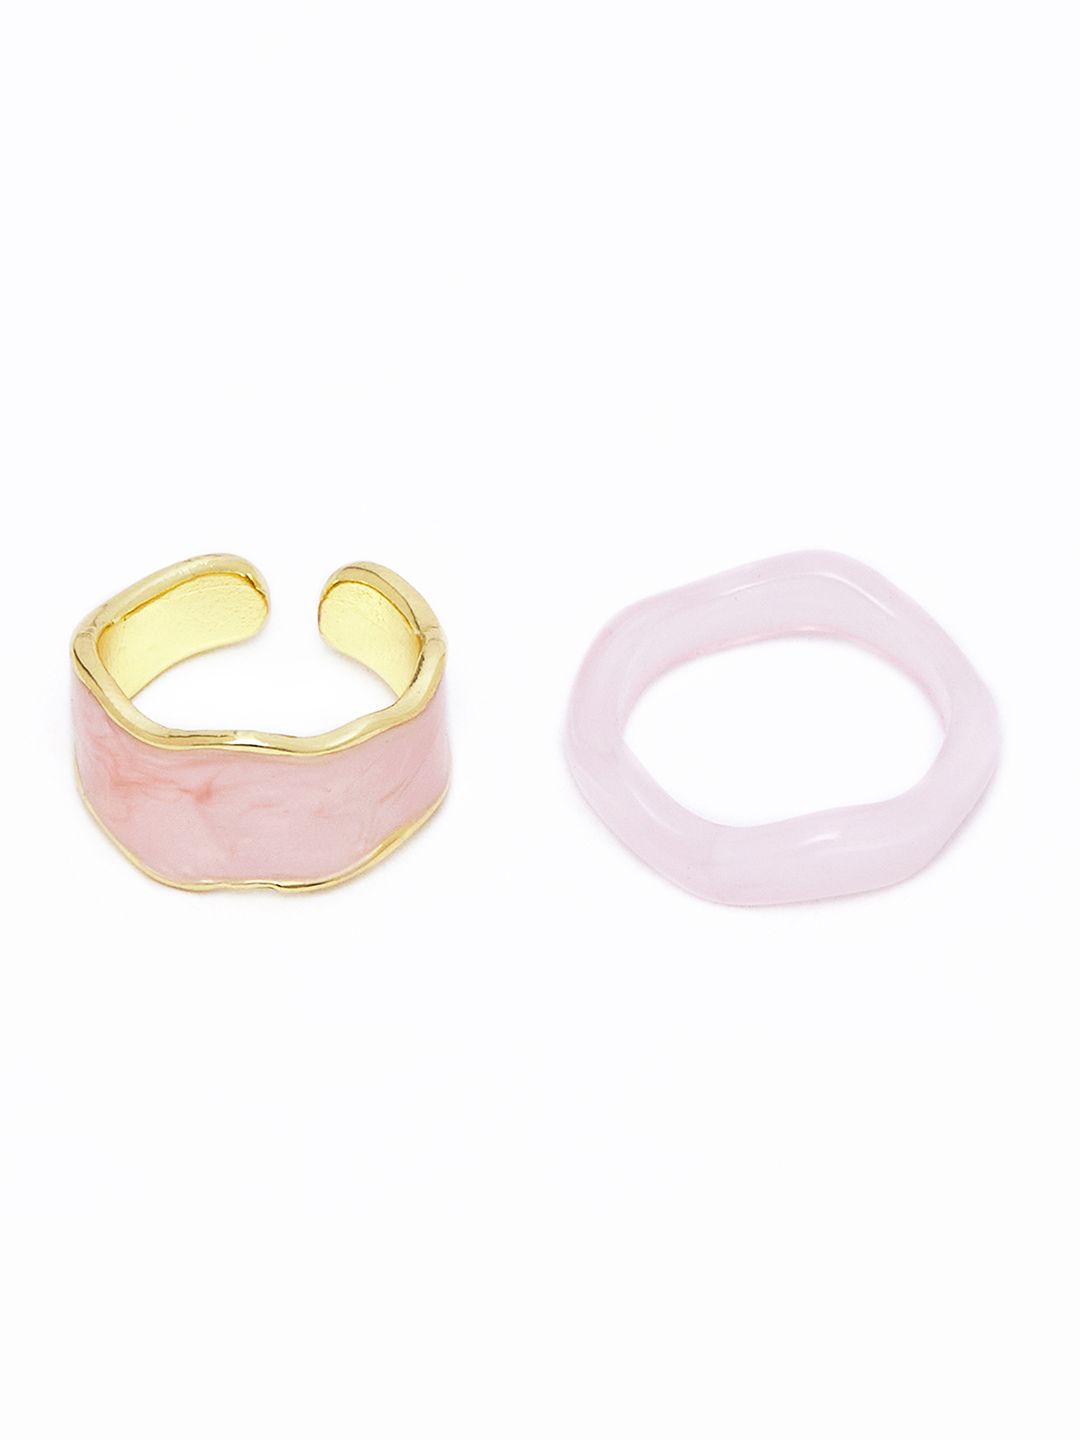 URBANIC Women Set of 2 Pink Rings Price in India